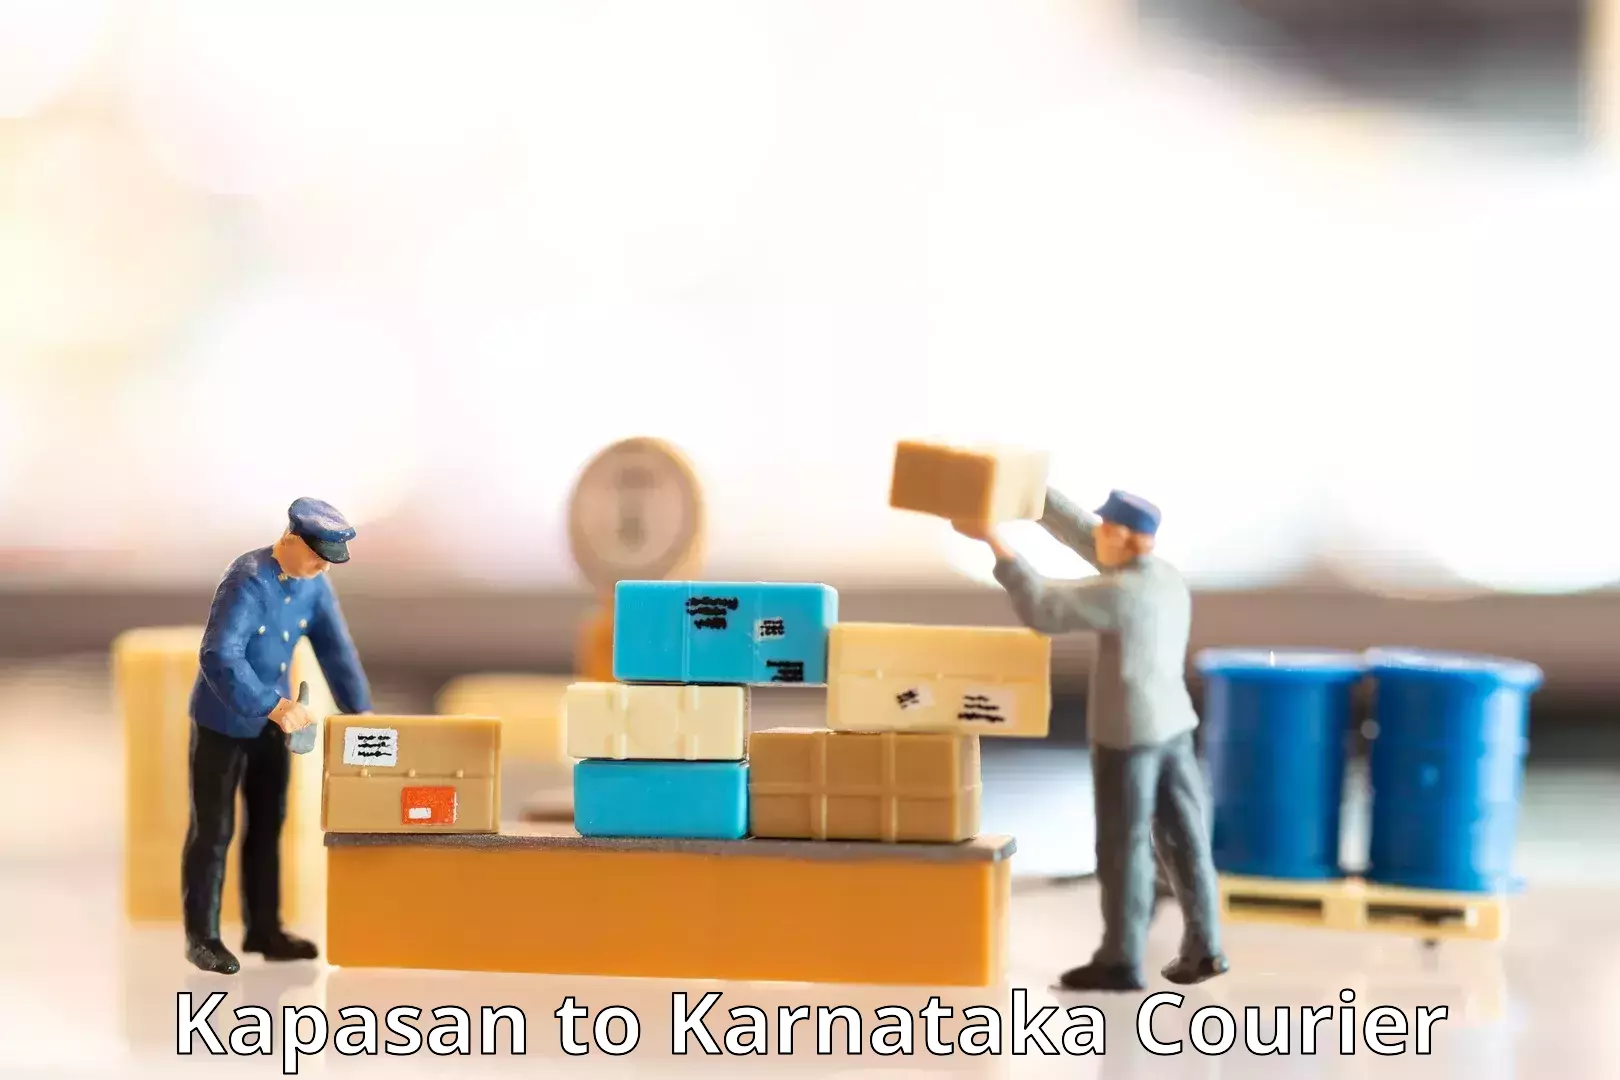 High-priority parcel service Kapasan to Kanjarakatte